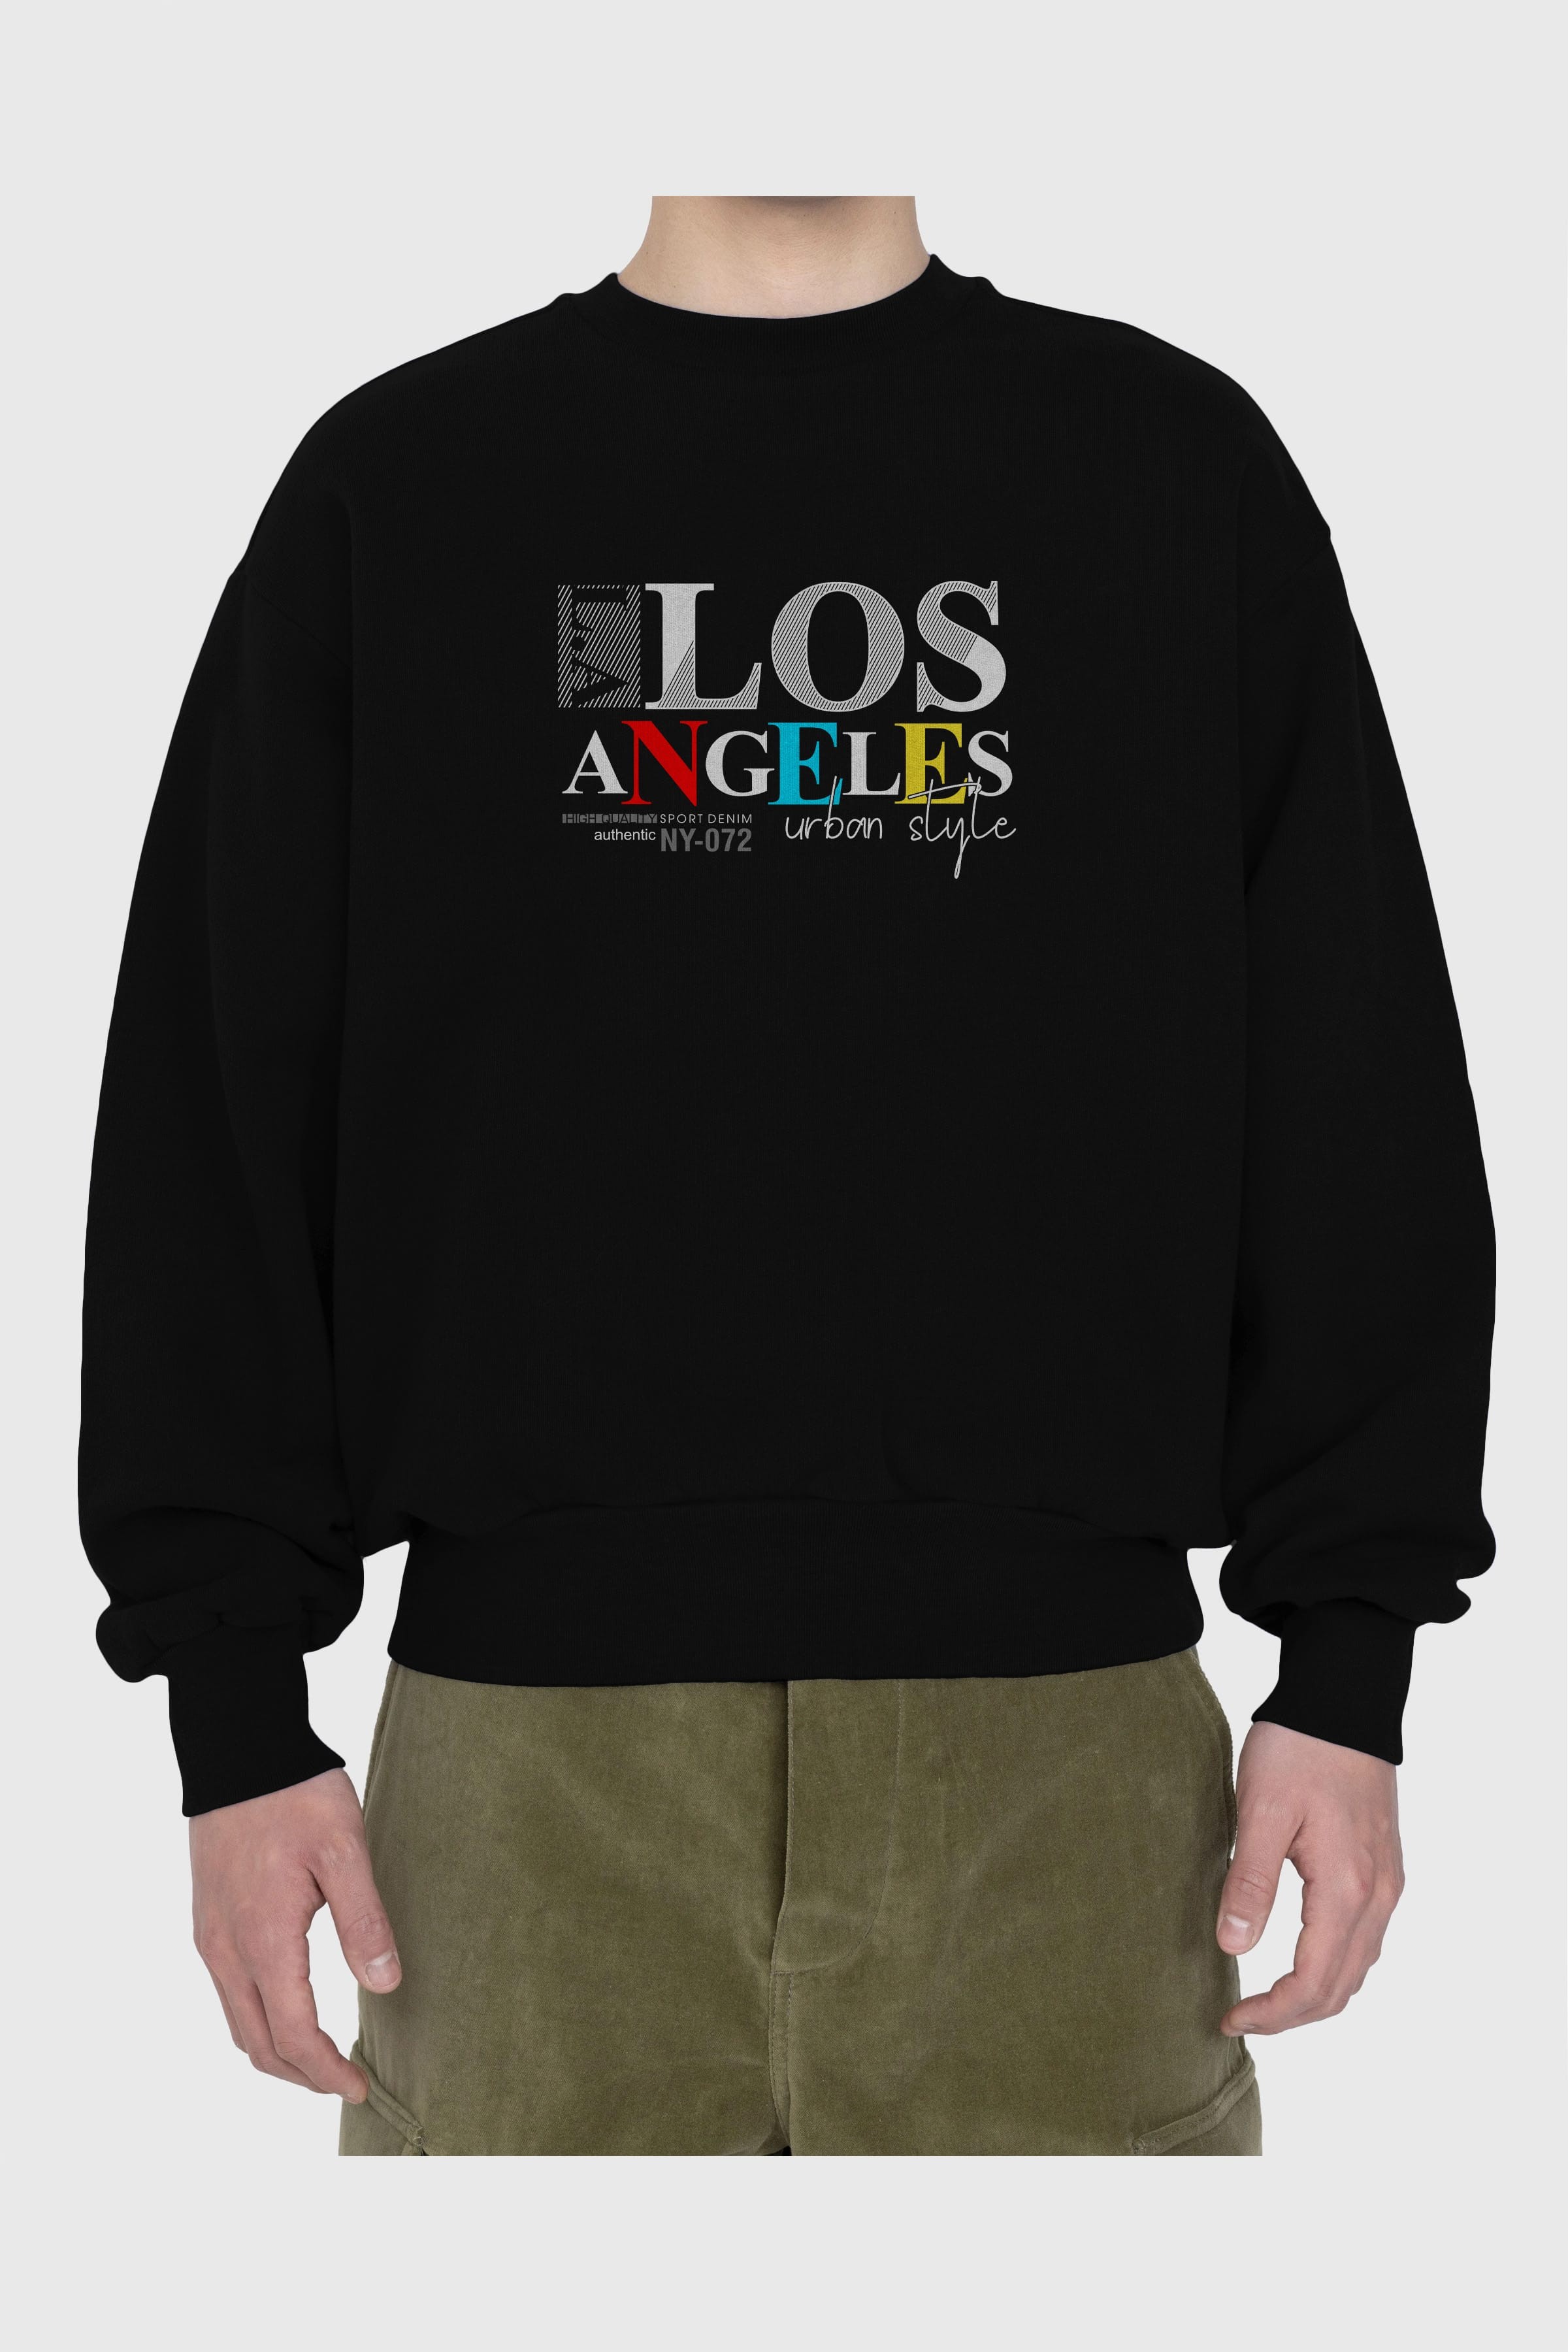 Los Angeles Style Ön Baskılı Oversize Sweatshirt Erkek Kadın Unisex